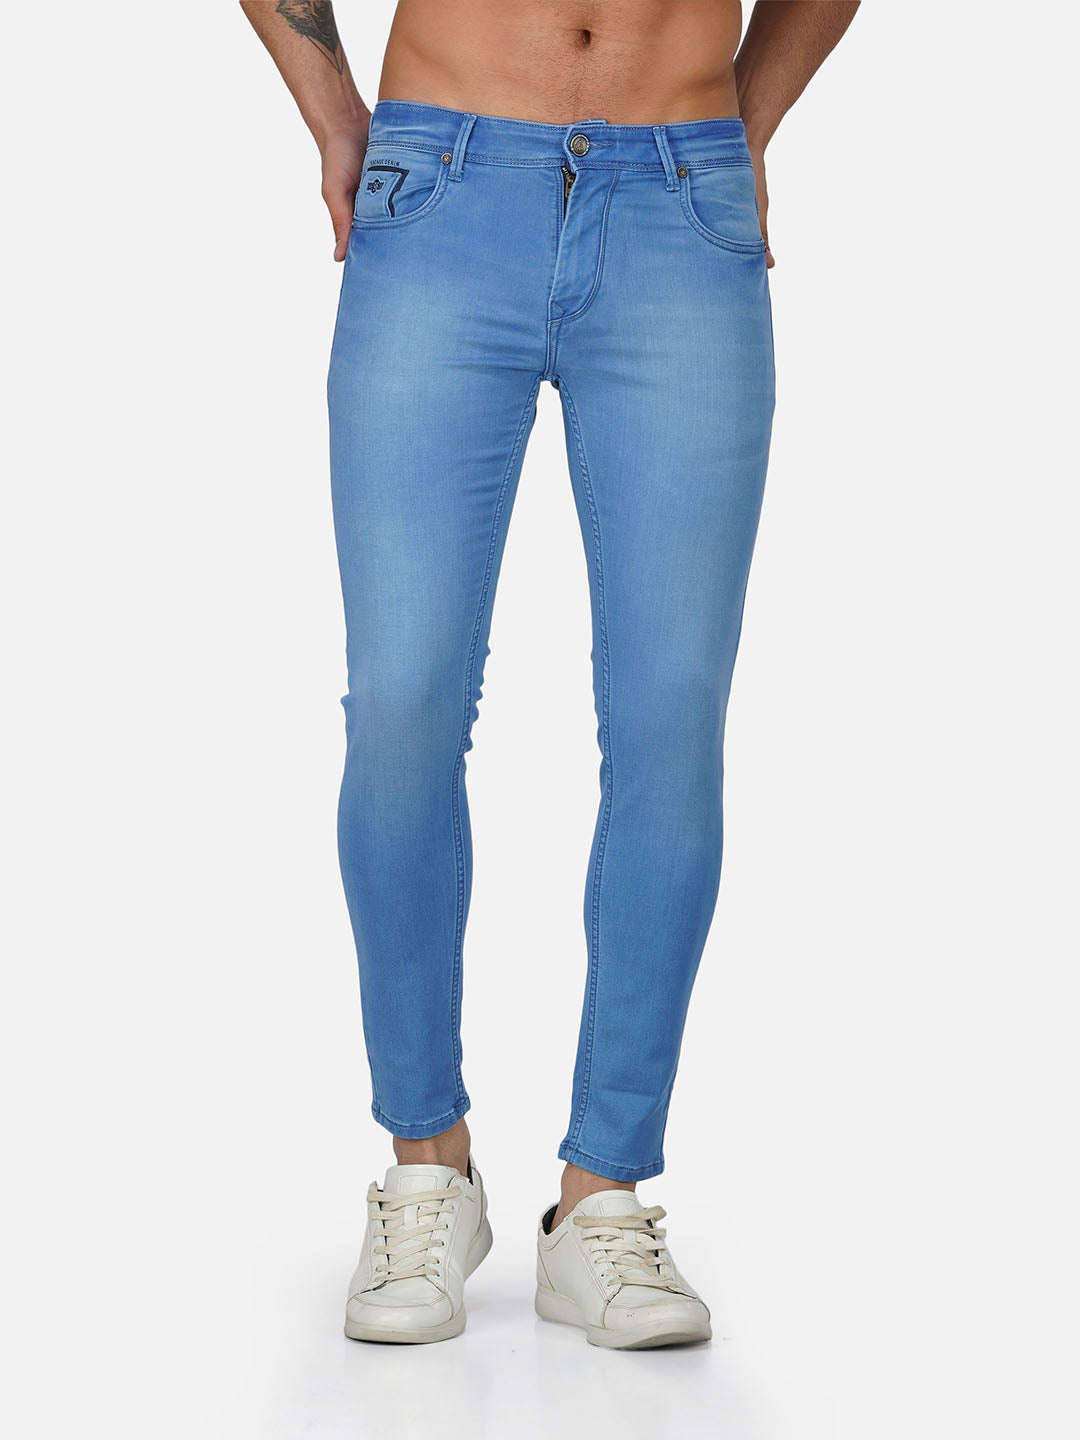 Men Slim Fit Light Blue Jeans – Orijean